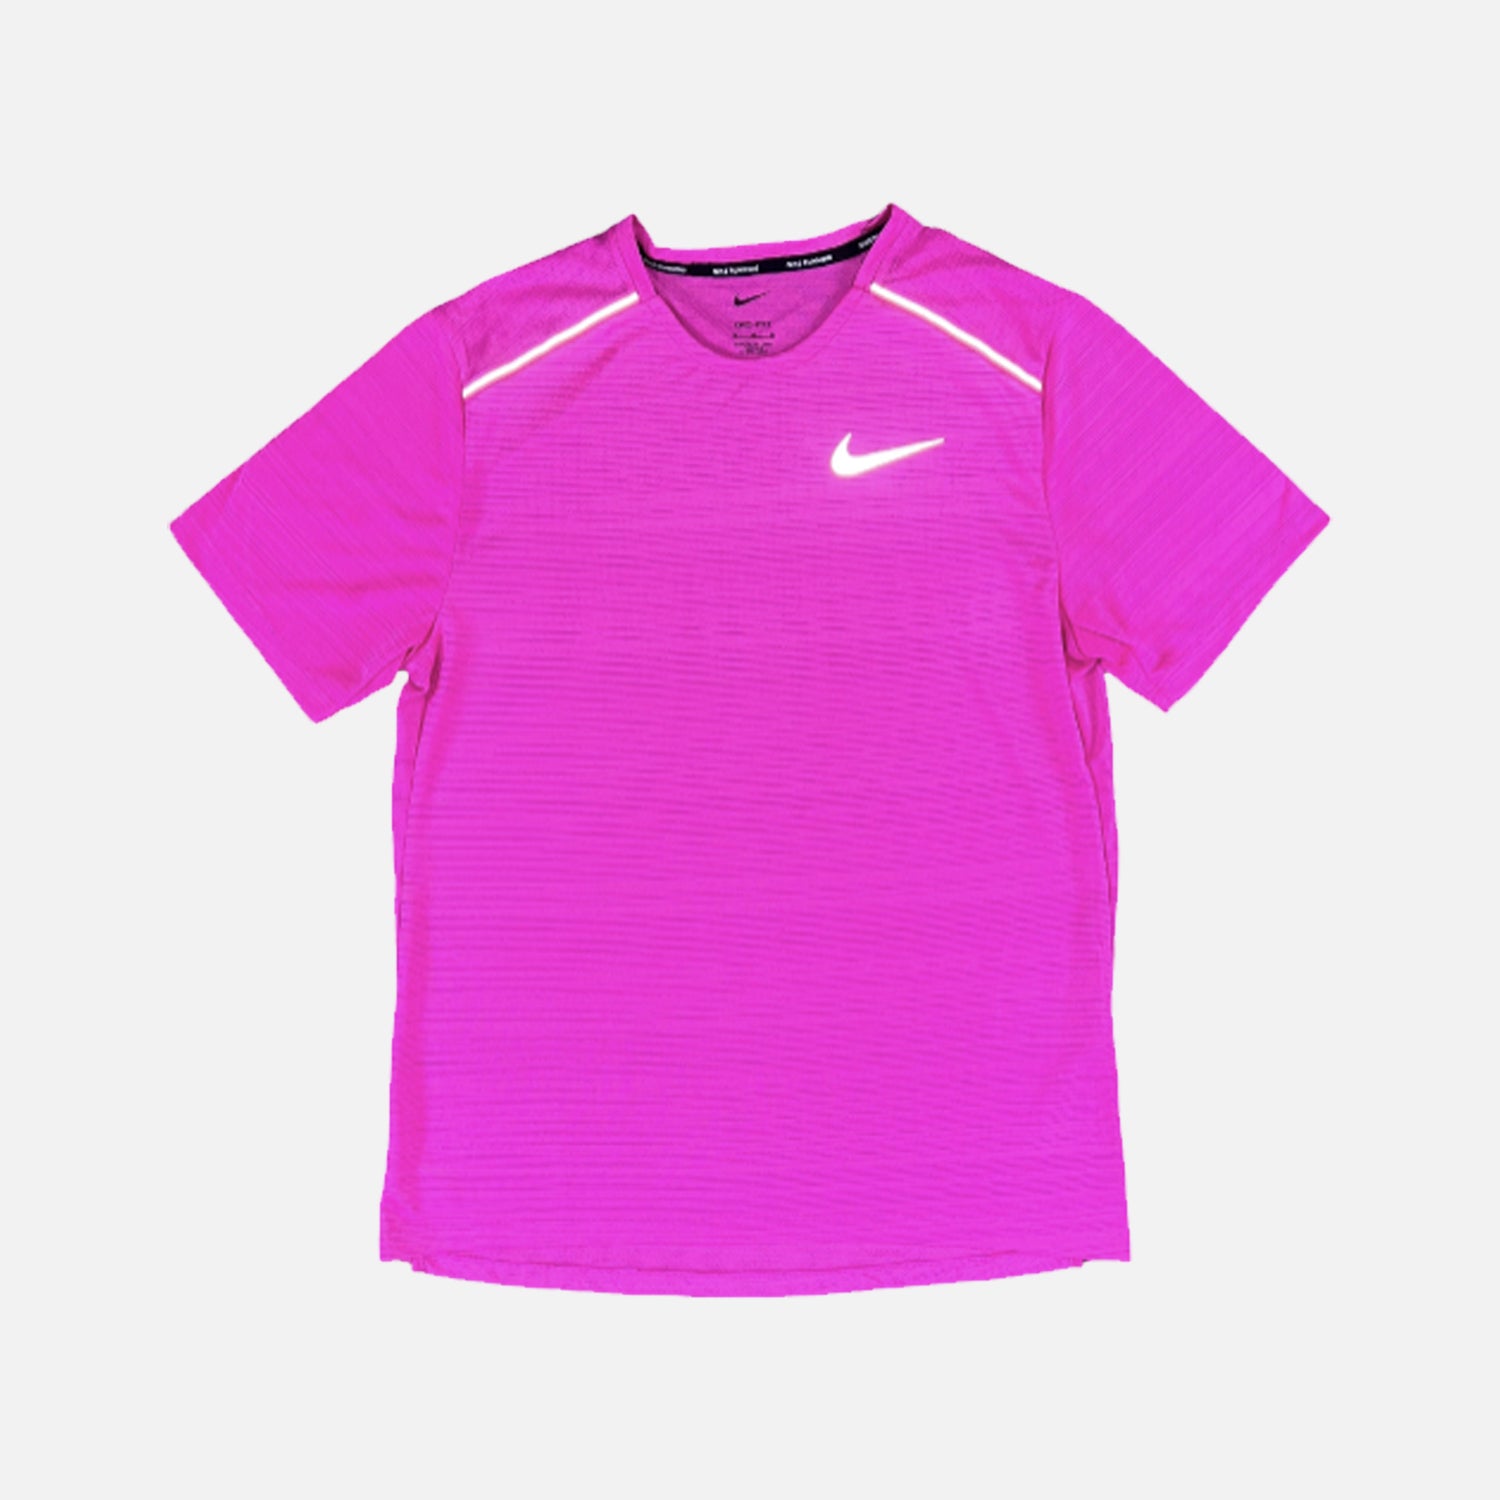 Nike Dri-Fit Miler 1.0 T-Shirt - Vibrant Pink